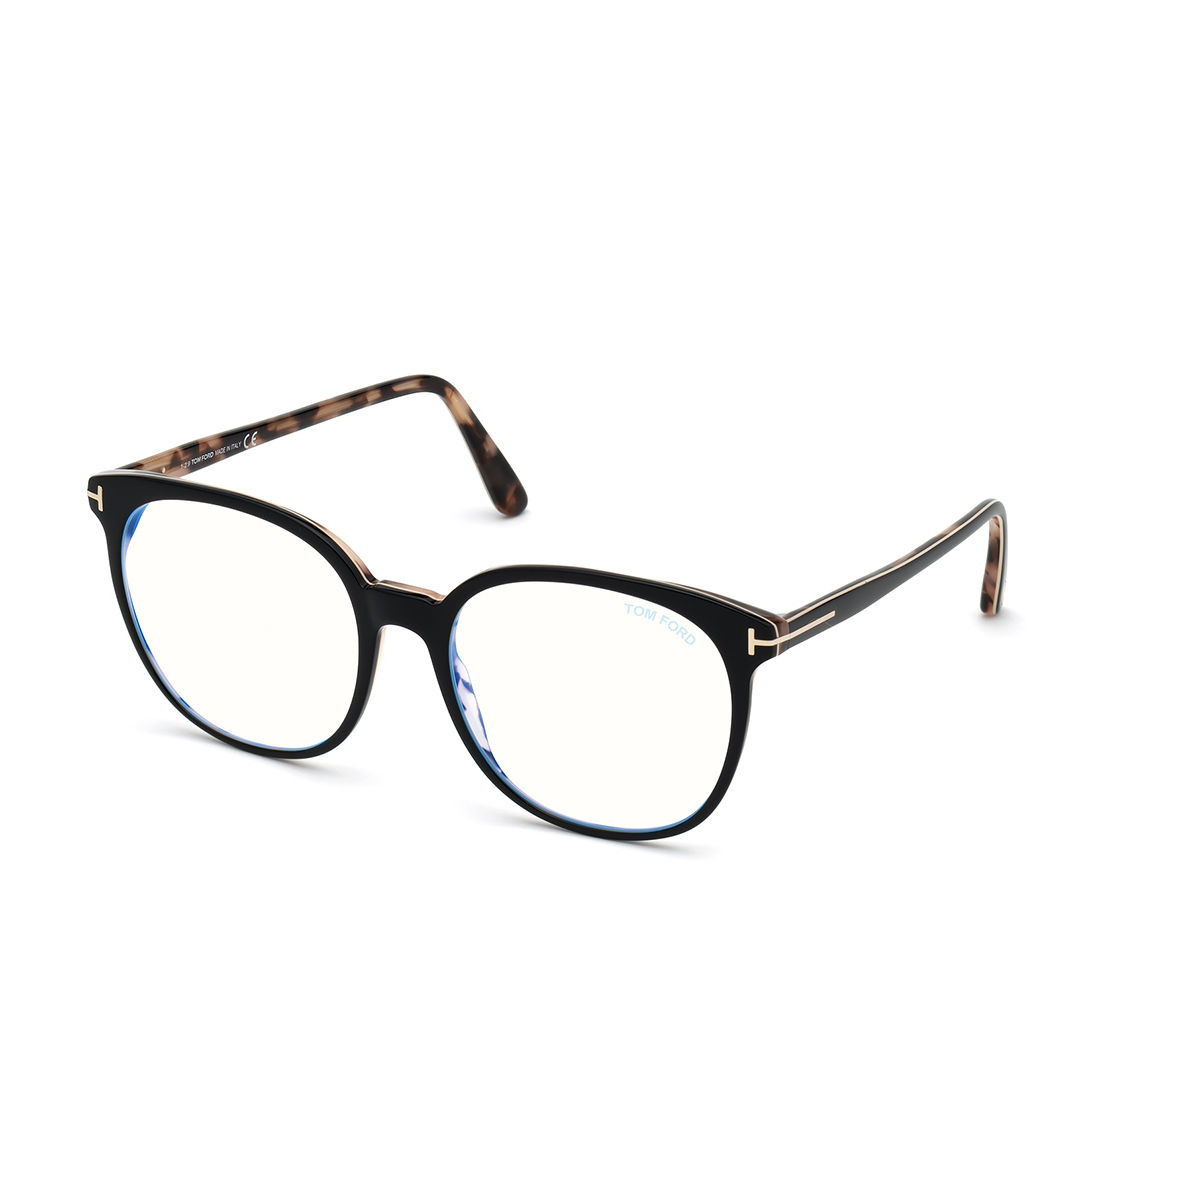 Tom Ford Sunglasses Black Plastic Eyeglasses FT5671-B 54 005: Buy Tom ...